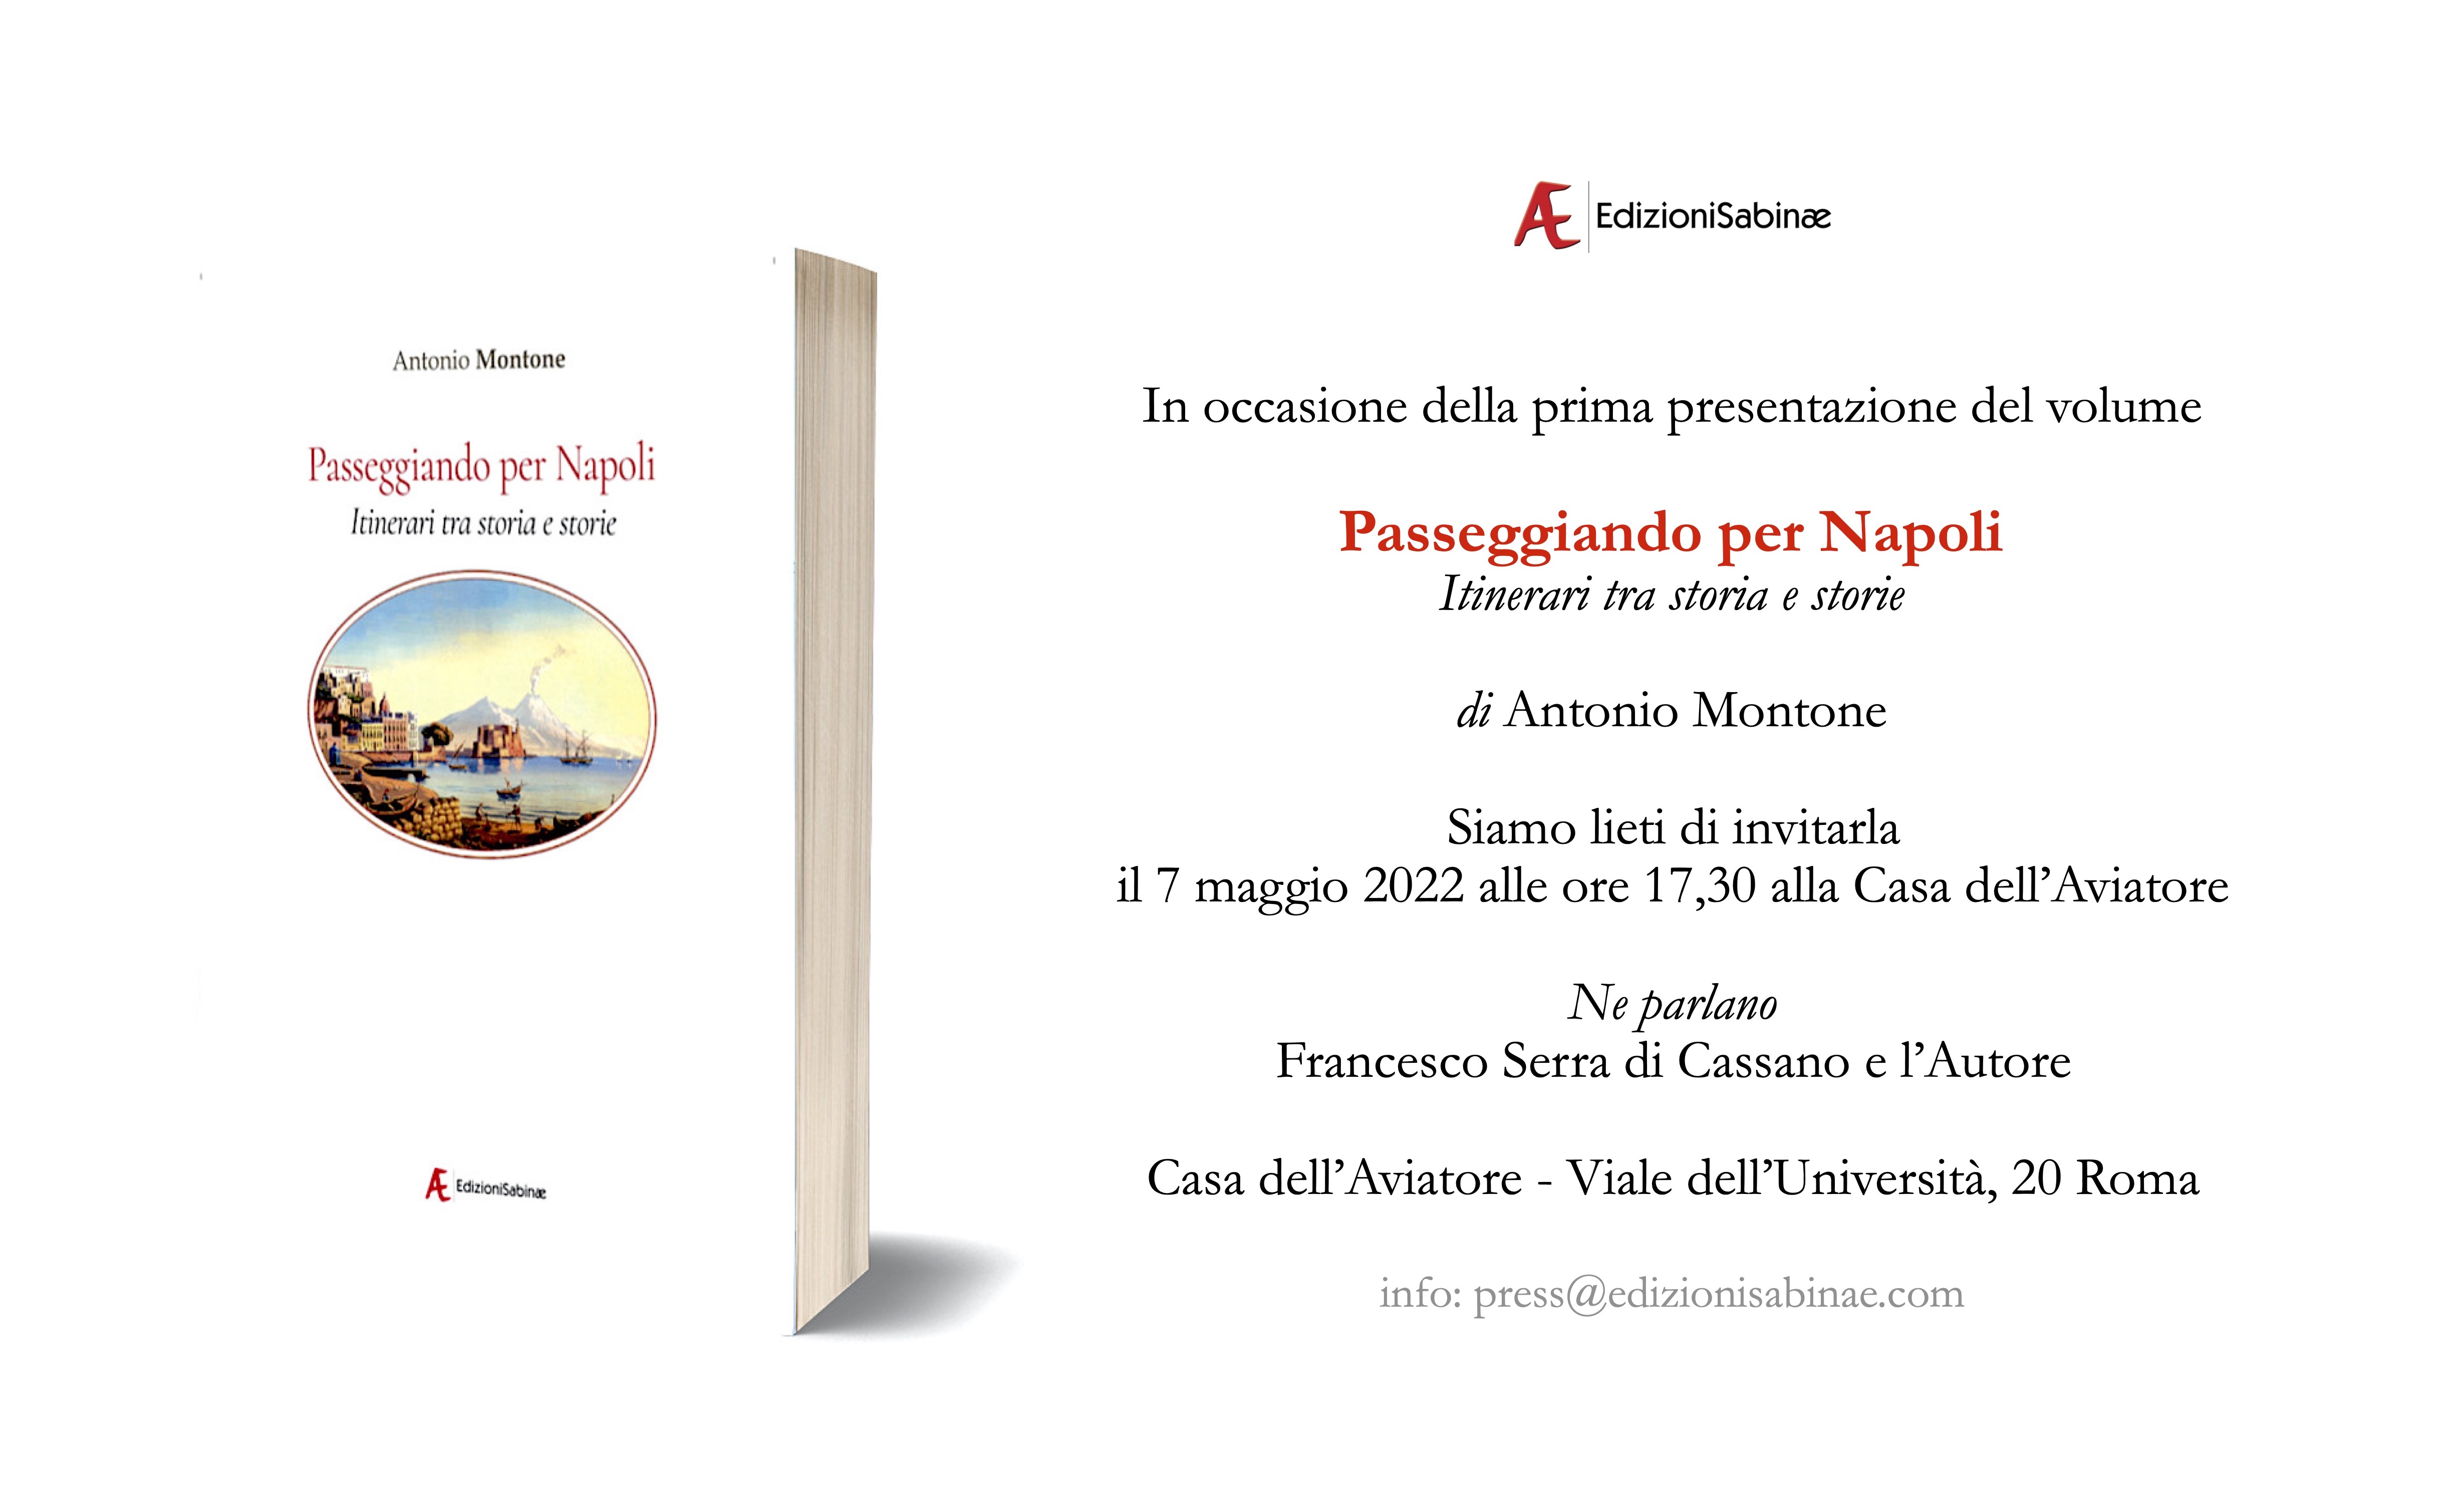 Invito 7 maggio 2022 Casa dell'Aviatore, Roma